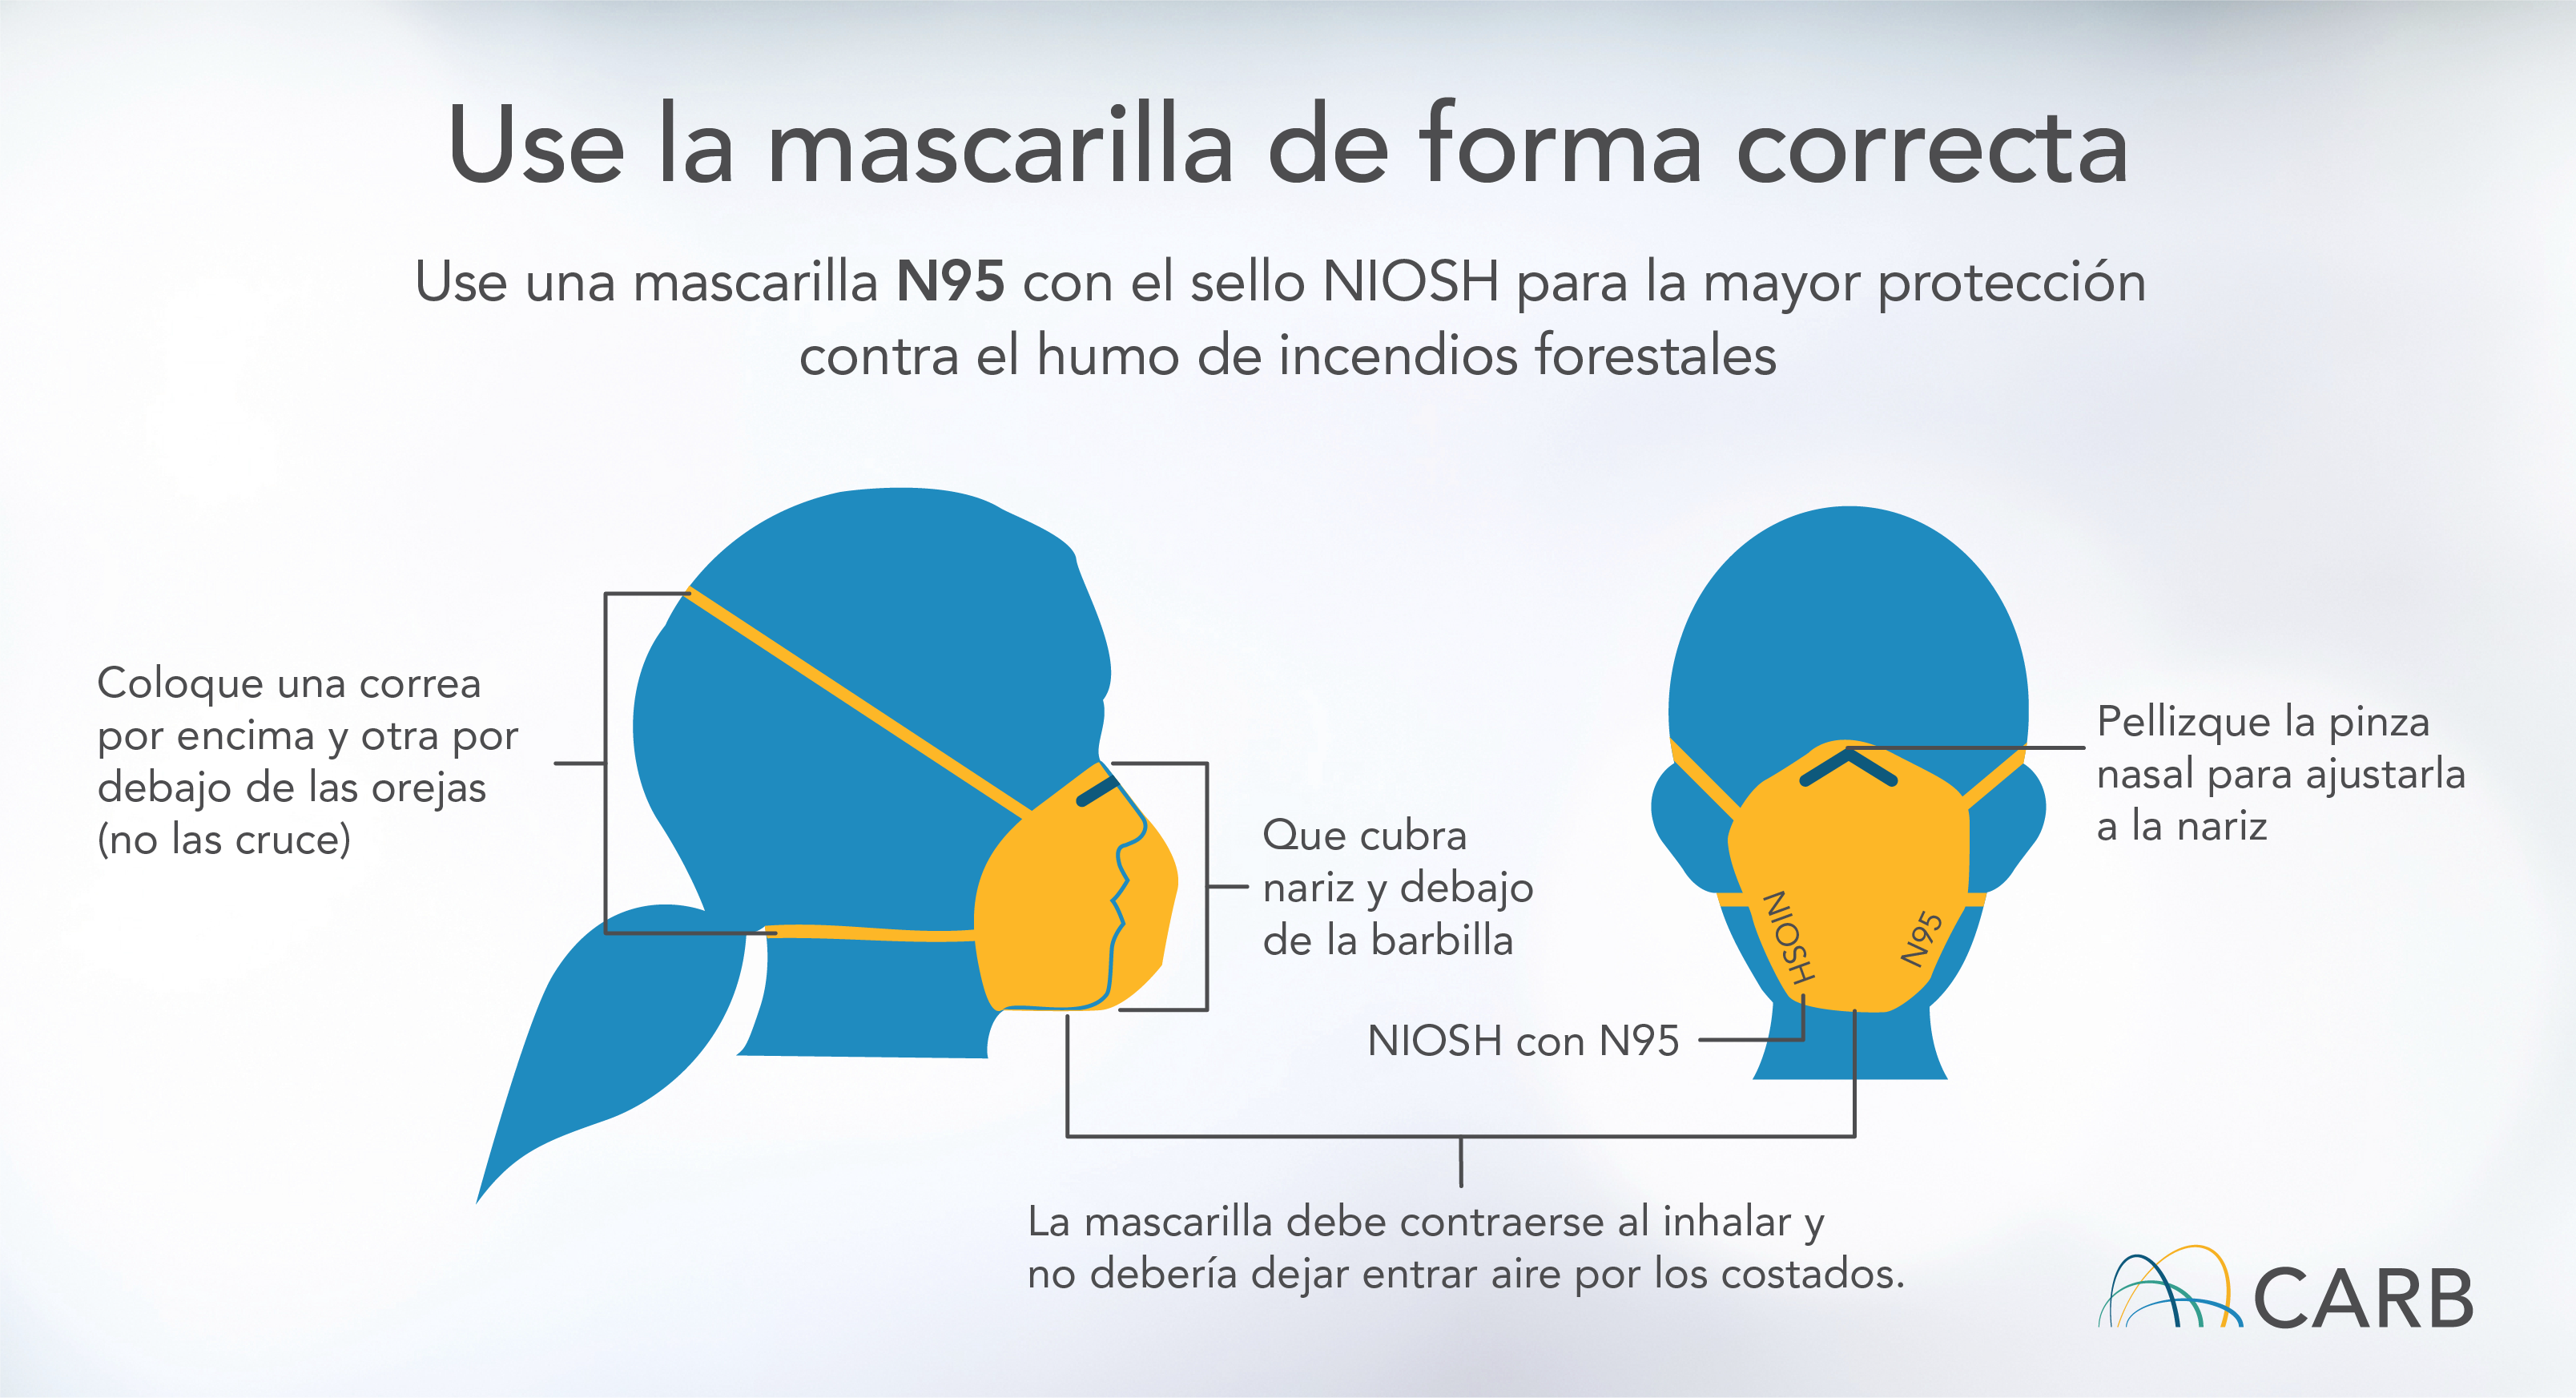 Use la mascarilla de forma correcta - Use una mascarilla N95 con el sello NIOSH para la mayor protección contra el humo. Coloque una correa por encima y otra por debajo de las orejas (no las cruce). Pellizque la pinza nasal para ajustarla a la nariz. Que cubra nariz y debajo de la barbilla. NIOSH con N95. La mascarilla debe contraerse al inhalar y no debería dejar entrar aire por los costados.